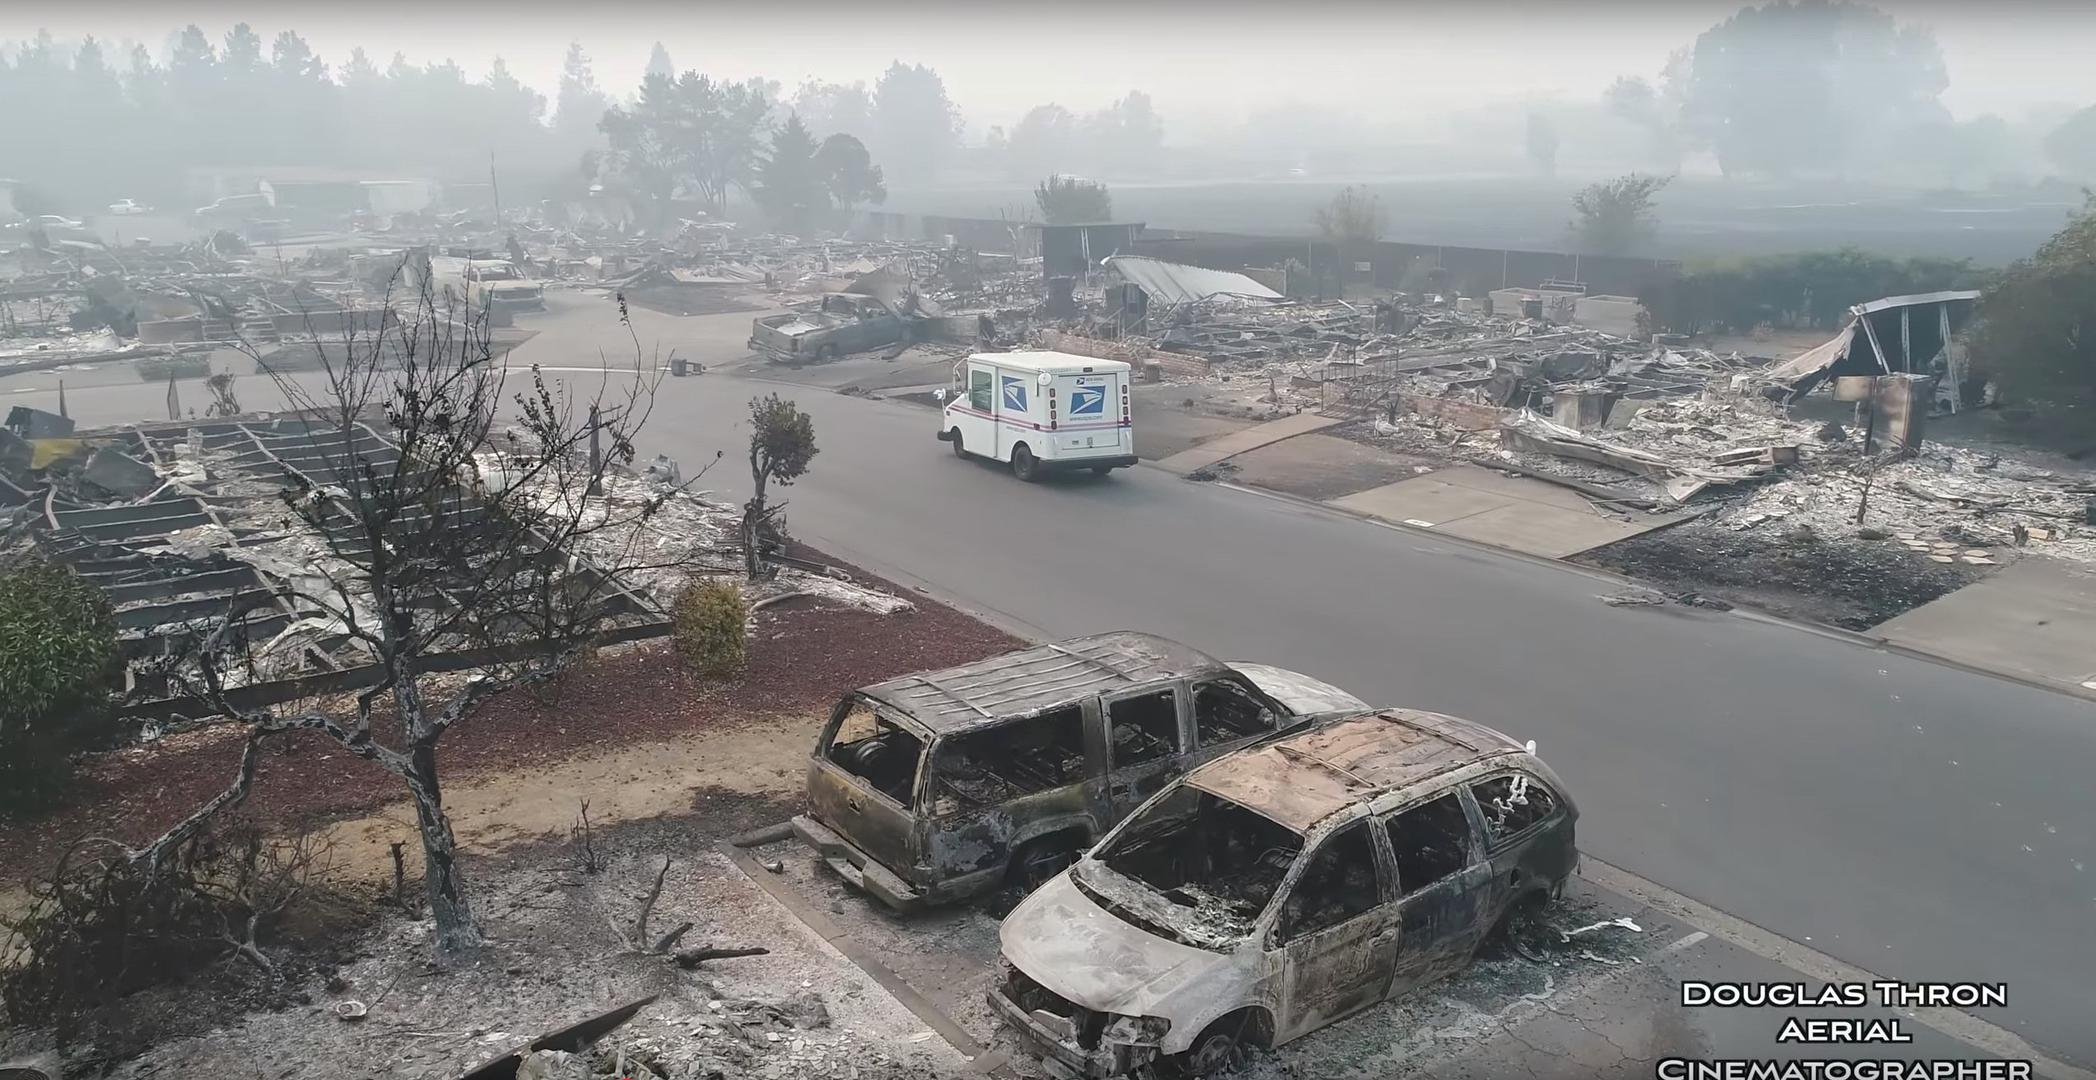 Kalifornija je pozvala susjedne američke savezne države da se pridruže borbi protiv posebno žestokih šumskih požara u kojima su od nedjelje poginule 24 osobe, 3500 građevina je uništeno, za više stotina osoba ne zna se gdje se nalaze, a stanje bi se moglo još pogoršati...

